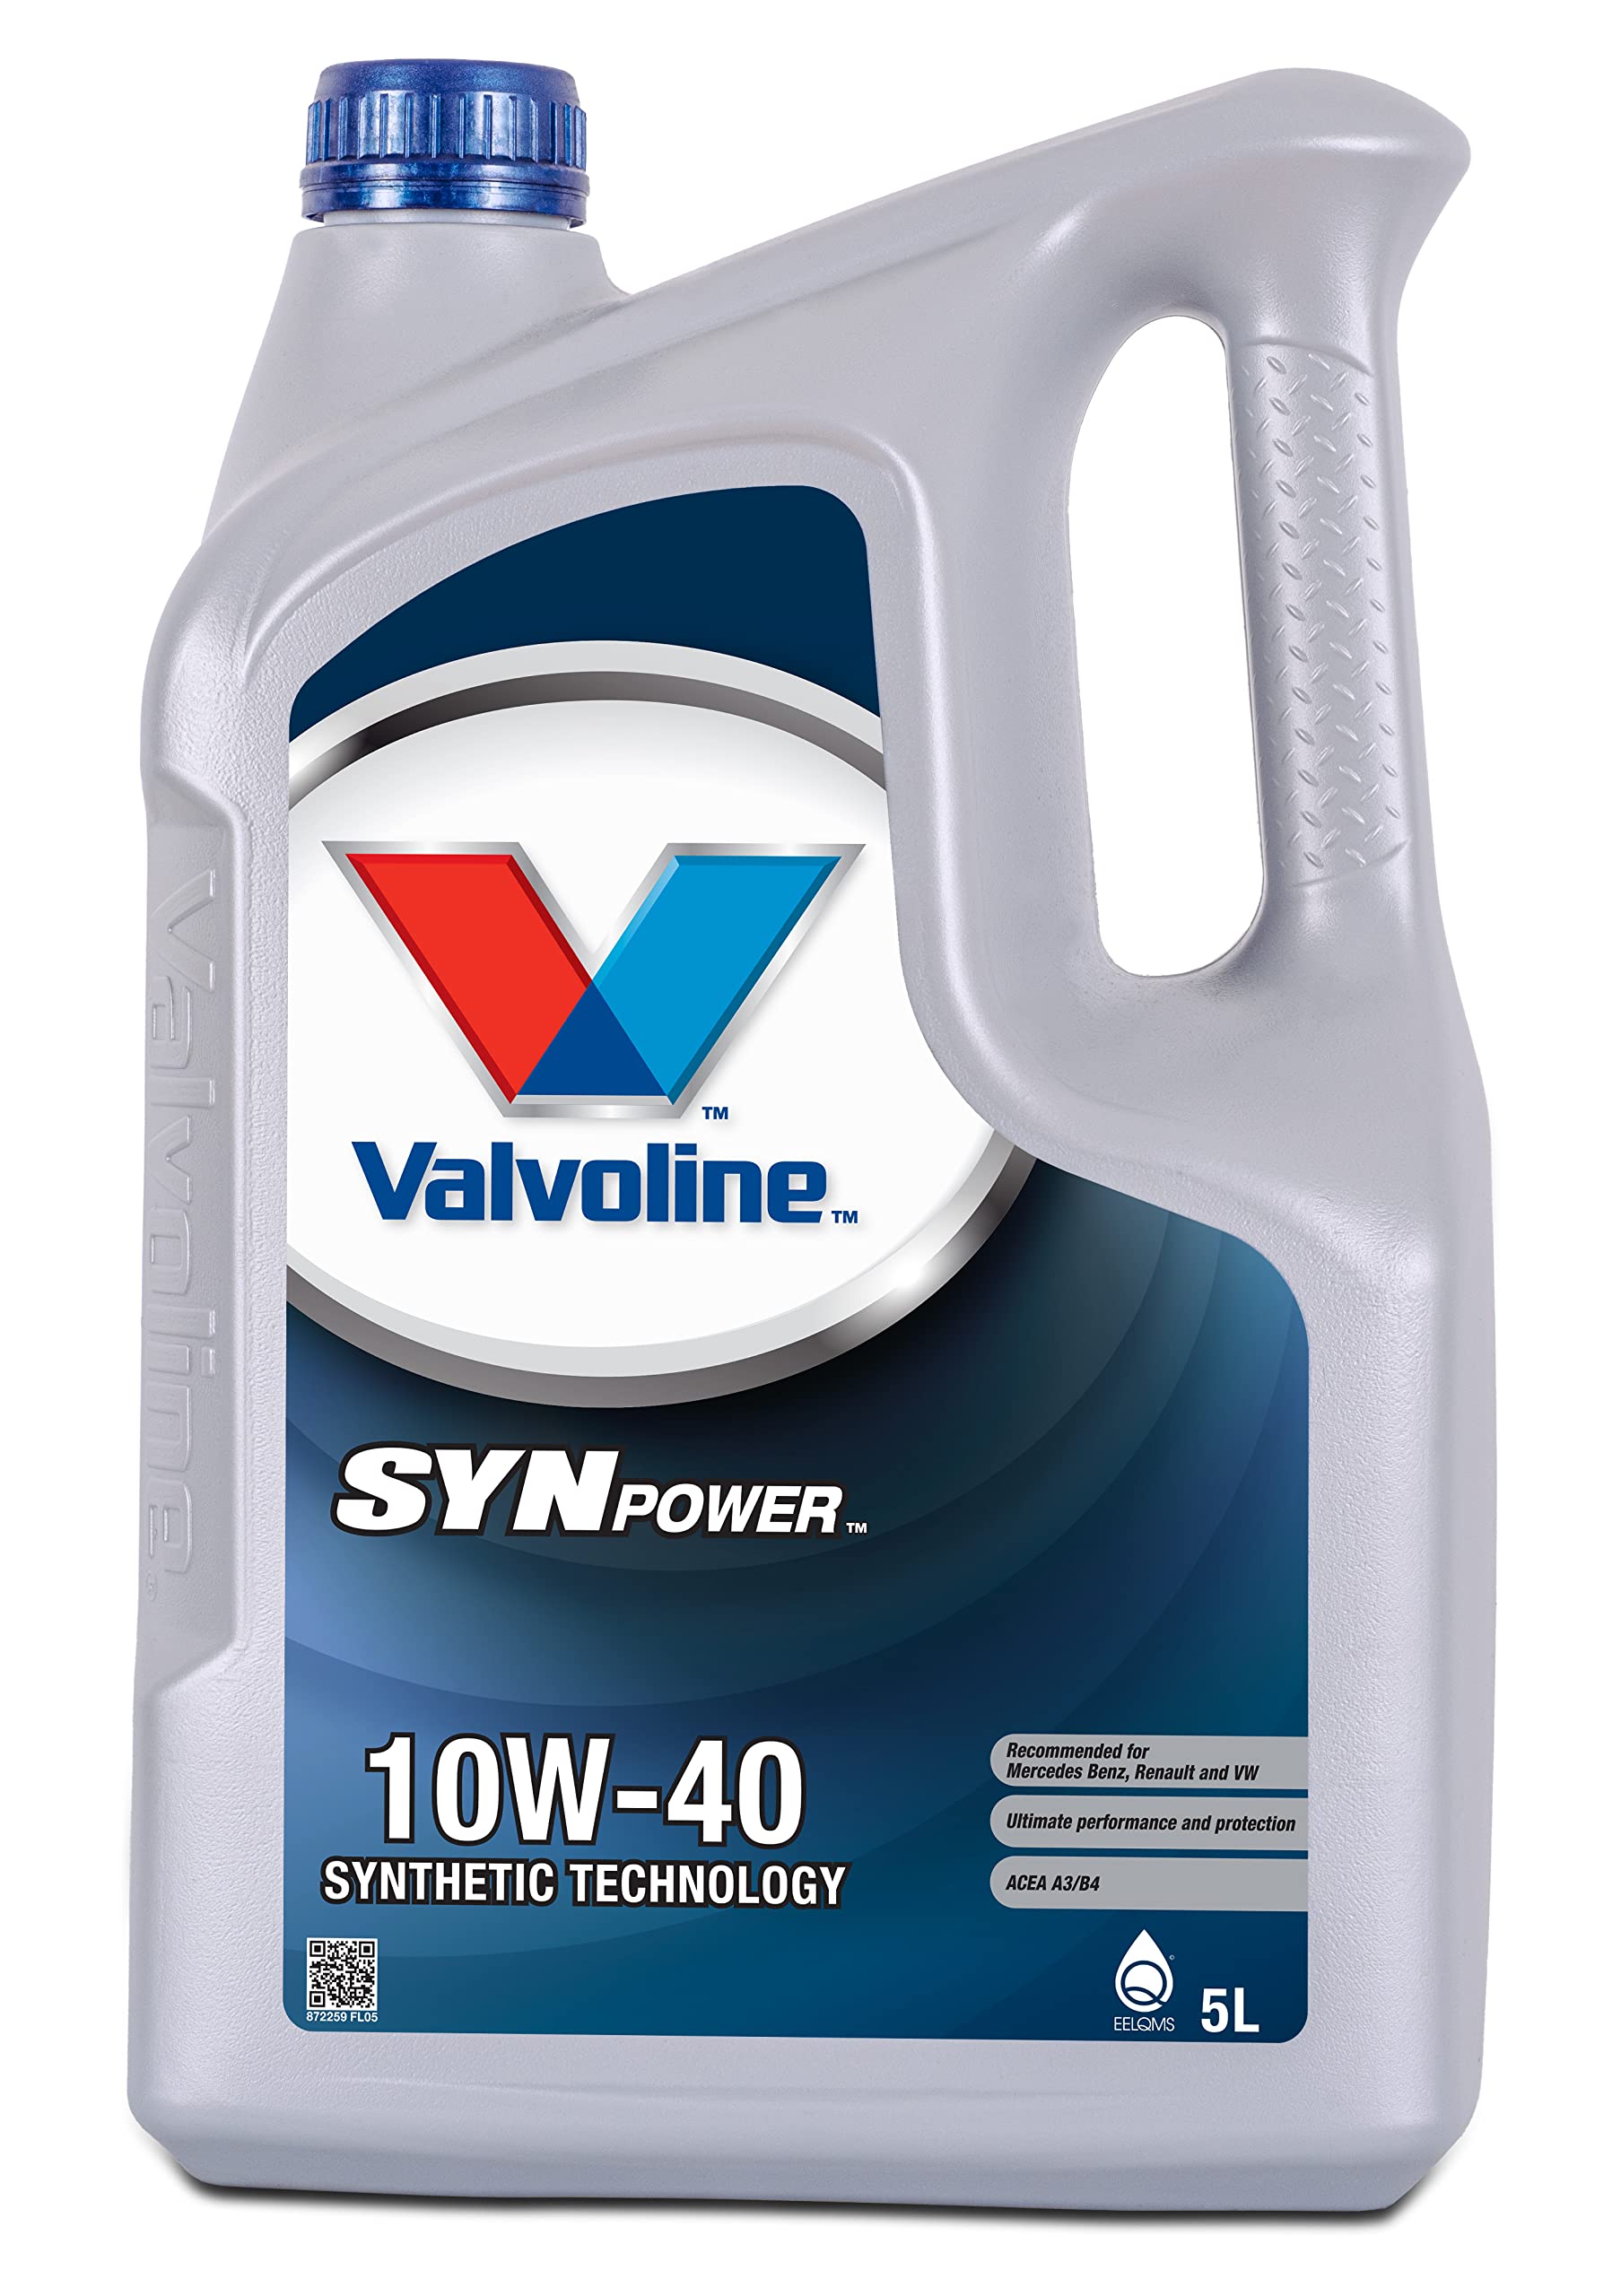 Valvoline SynPower 10W-40, 5L von Valvoline